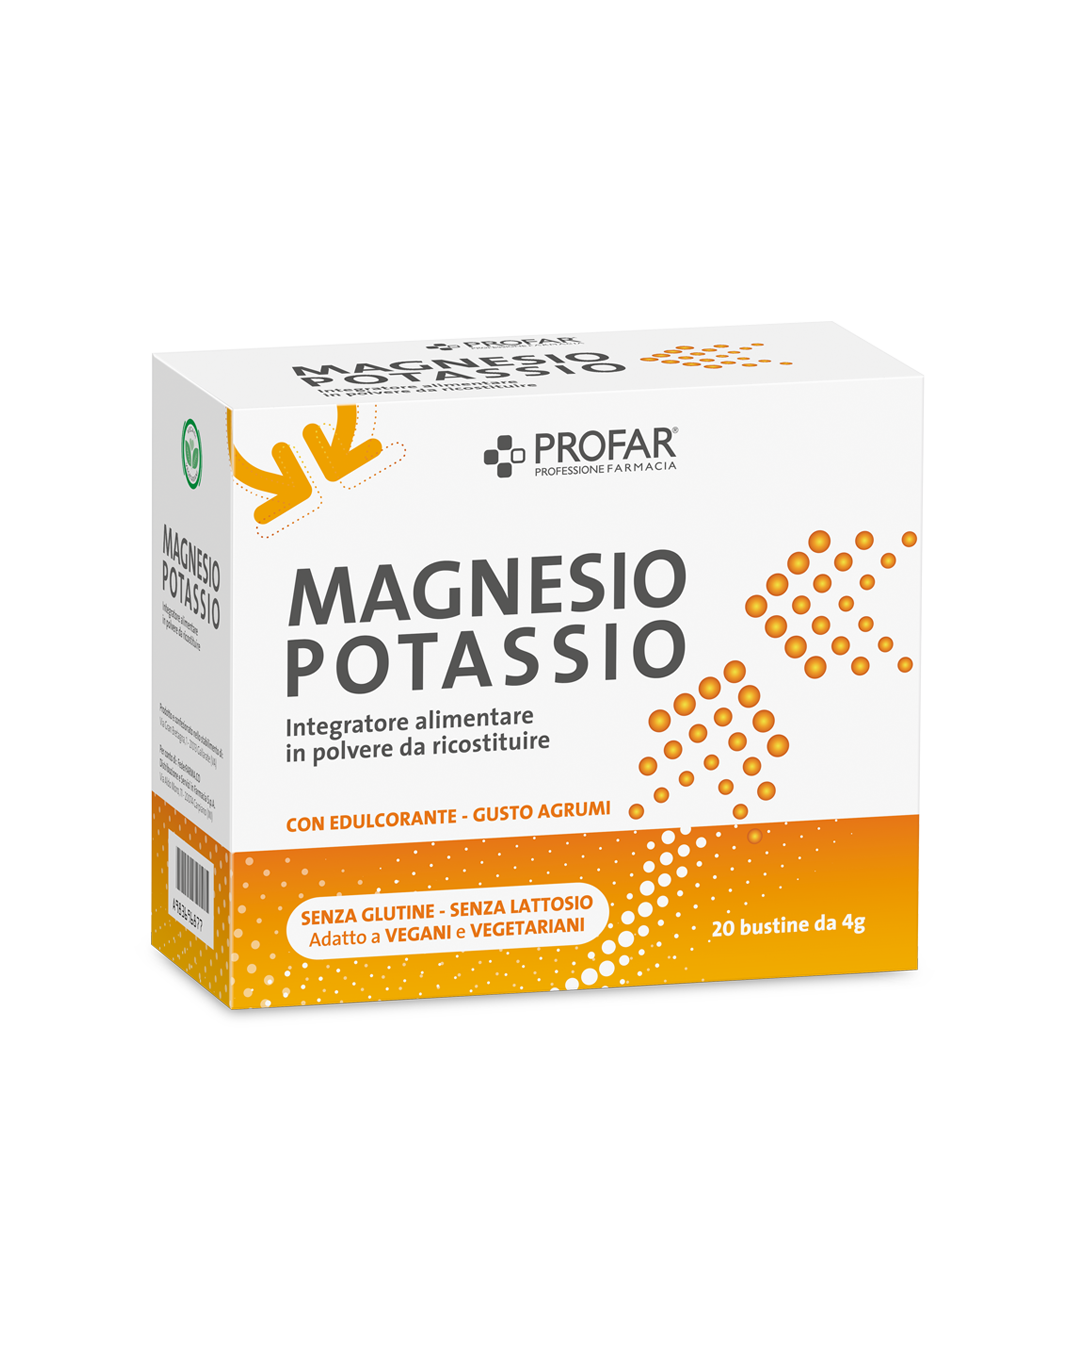 Magnesio e potassio